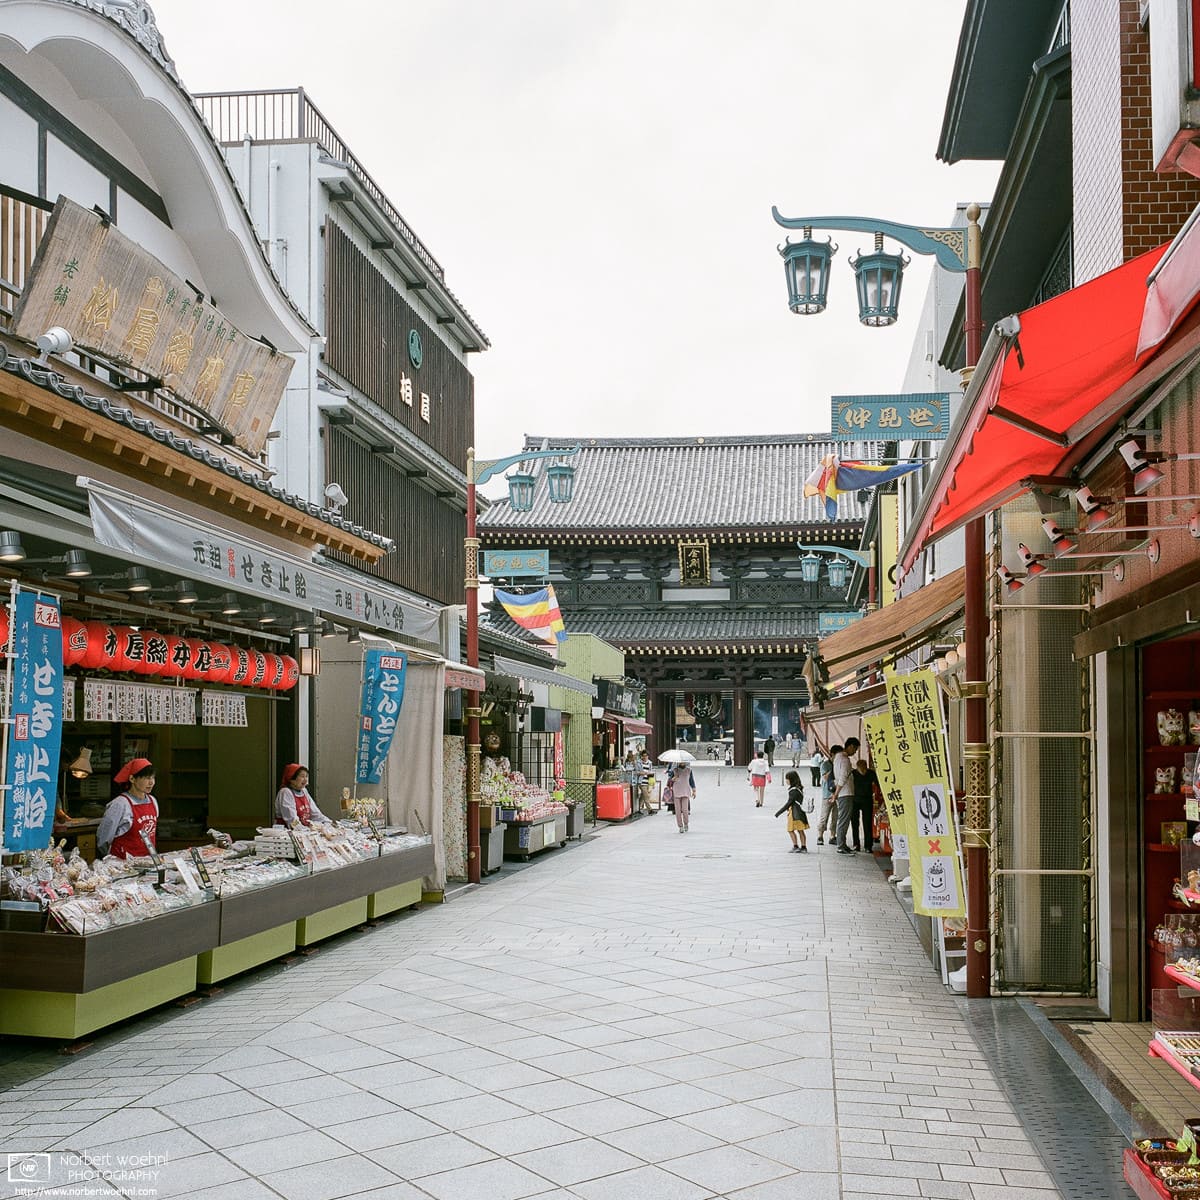 Approaching Kawasaki Daishi (Heiken-ji) Temple in Kawasaki, Japan, along a road lined with shops.